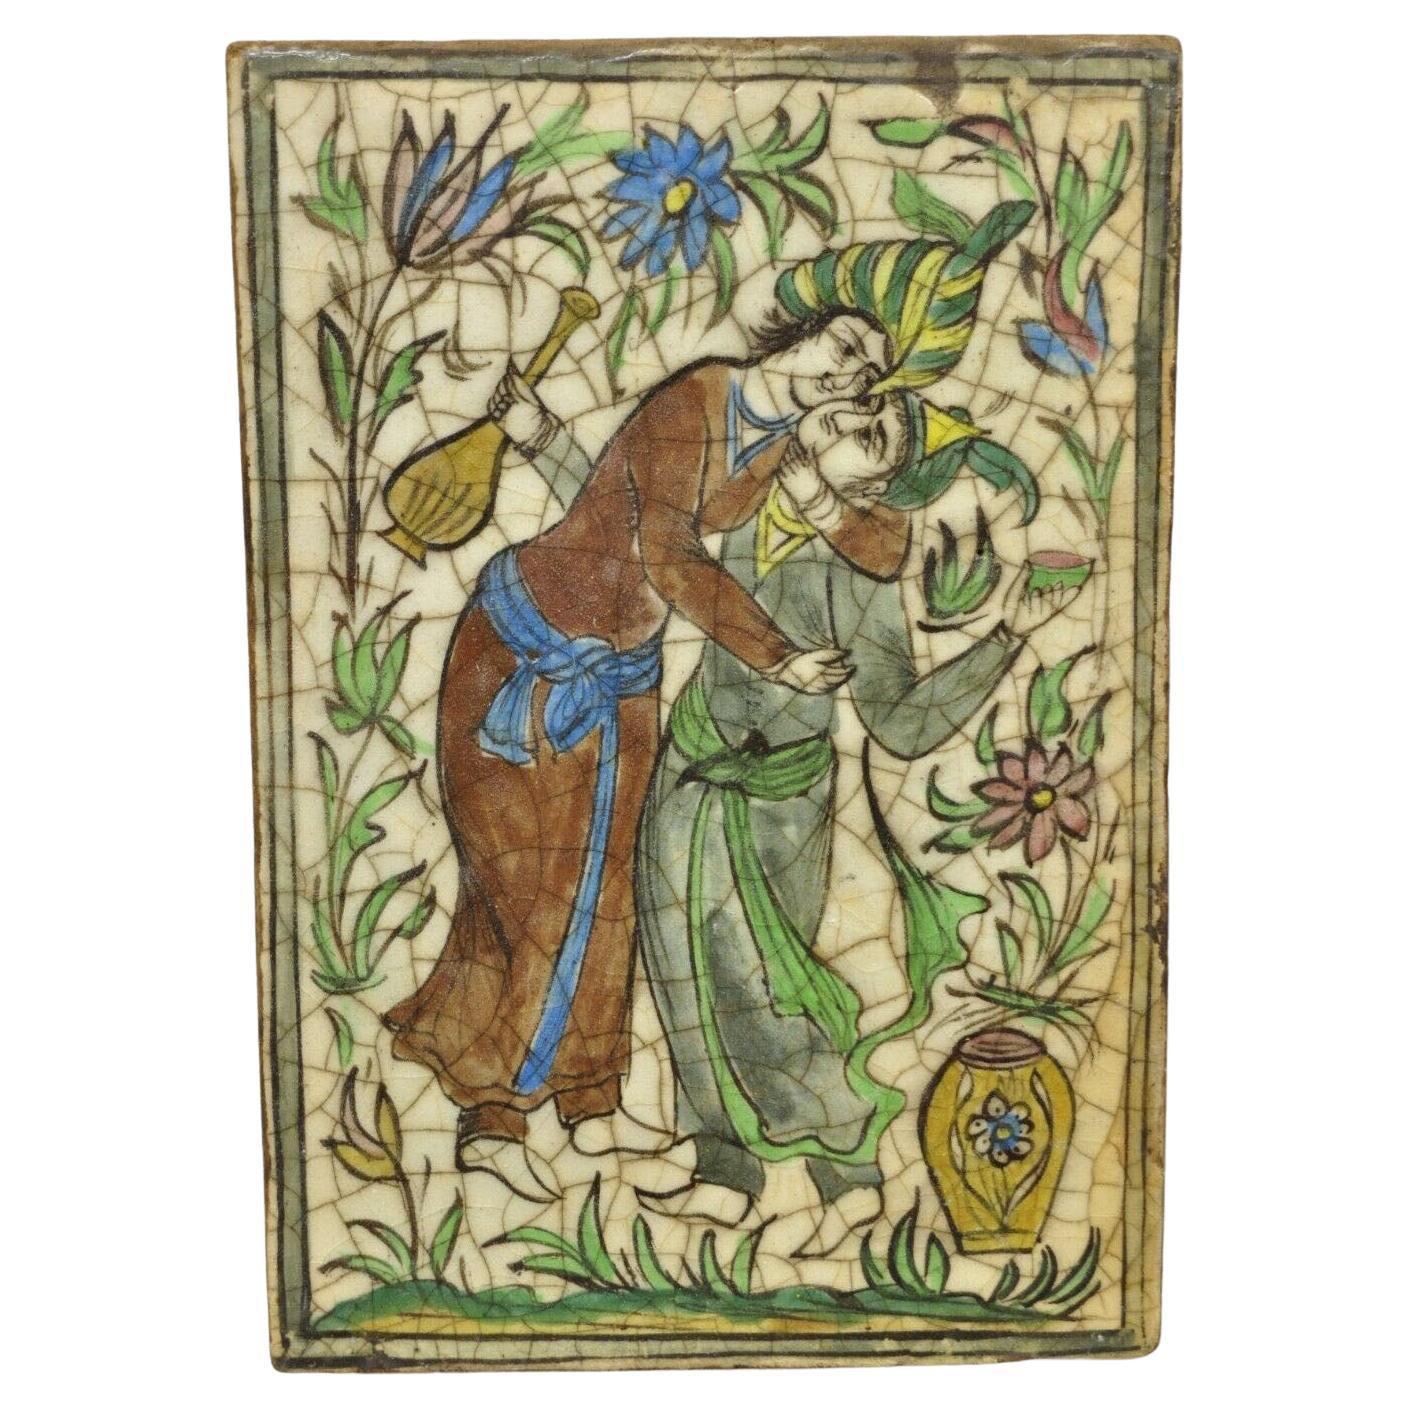 Ancienne poterie persane Iznik Qajar de style céramique Tile Green Couple Embrace C1